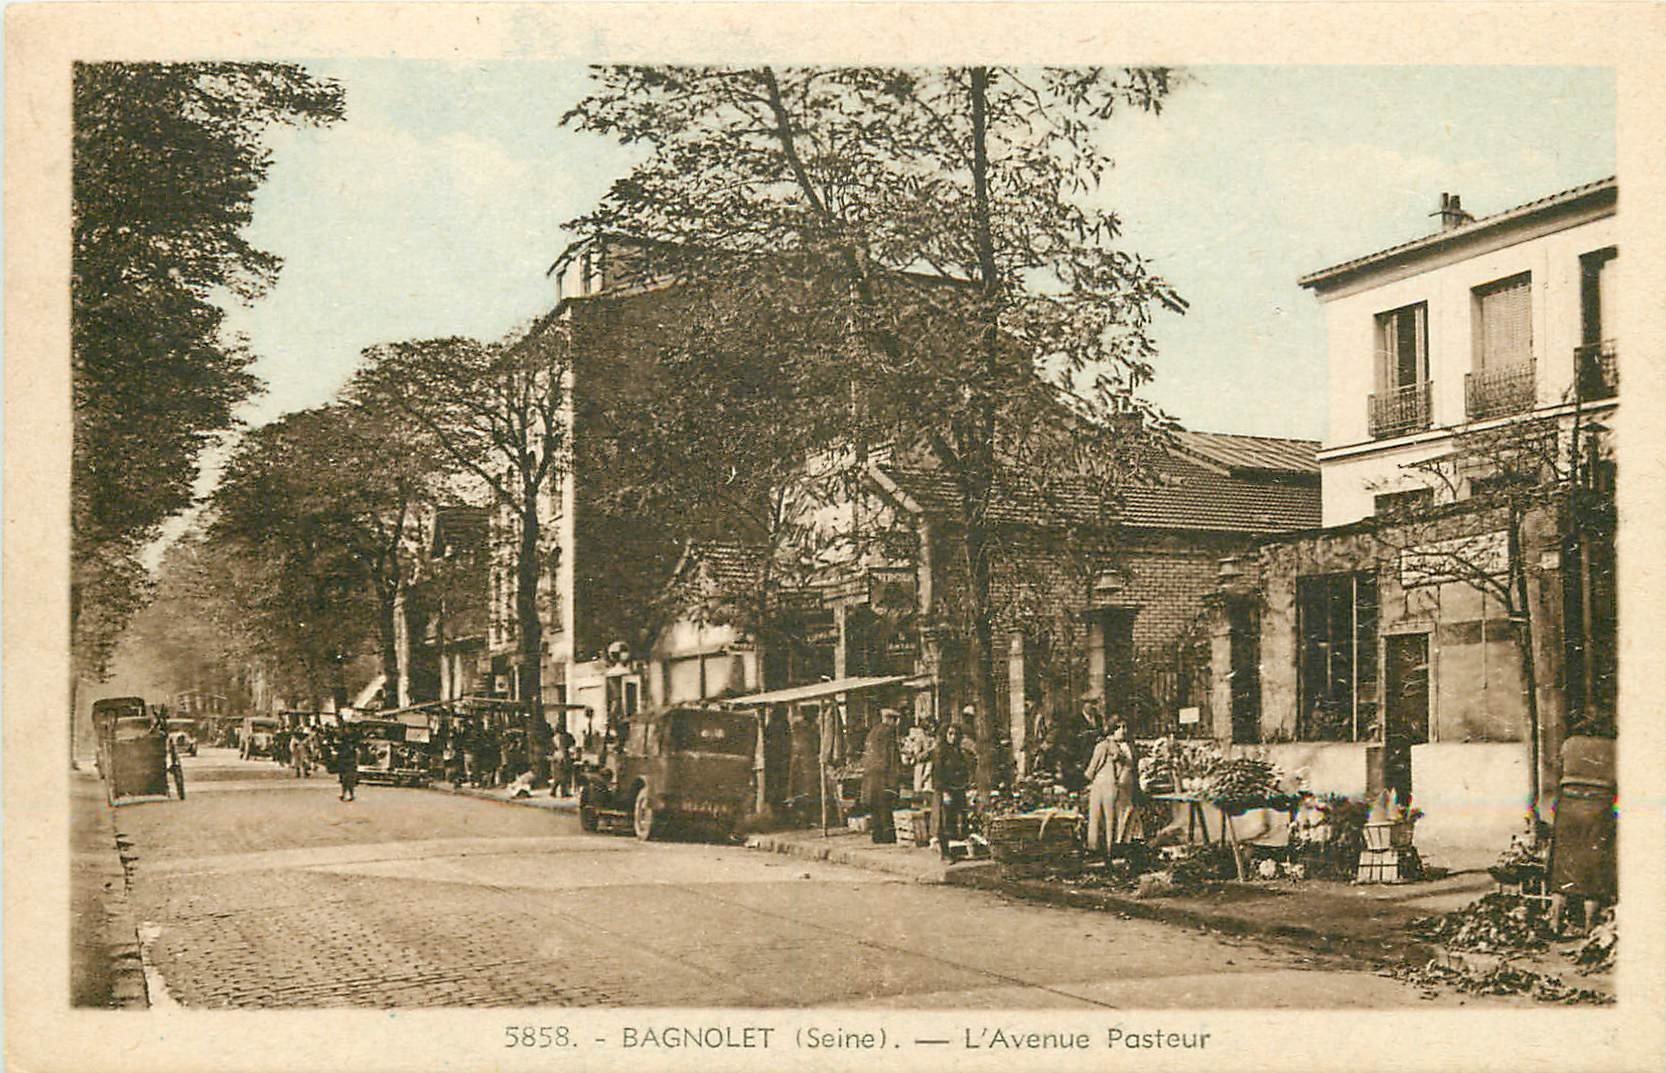 93 BAGNOLET. Le Marché Avenue Pasteur